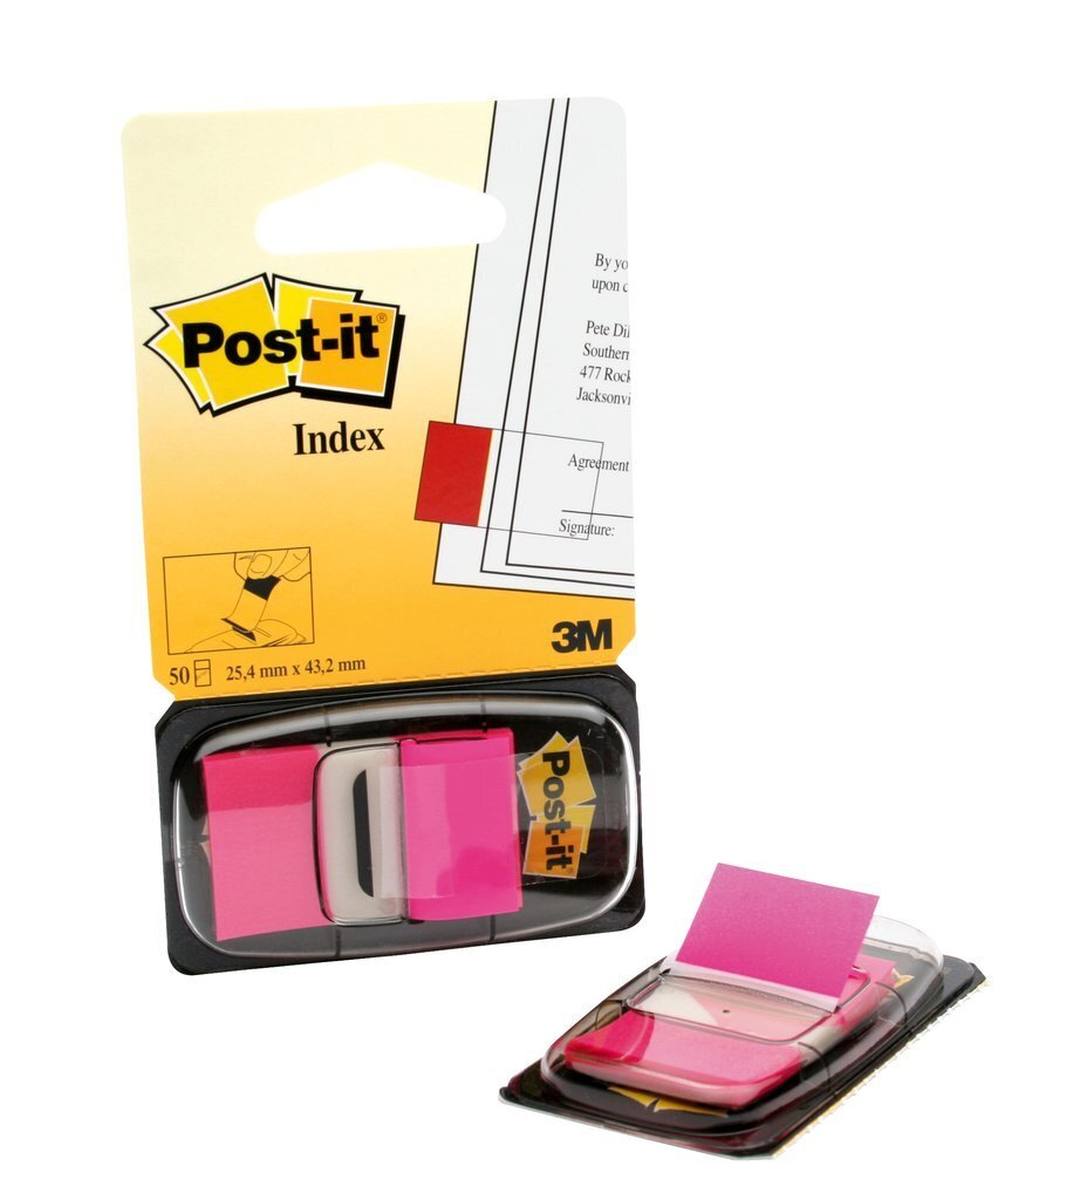 3M Post-it Index I680-21, 25,4 mm x 43,2 mm, pink, 1 x 50 Haftstreifen im Spender